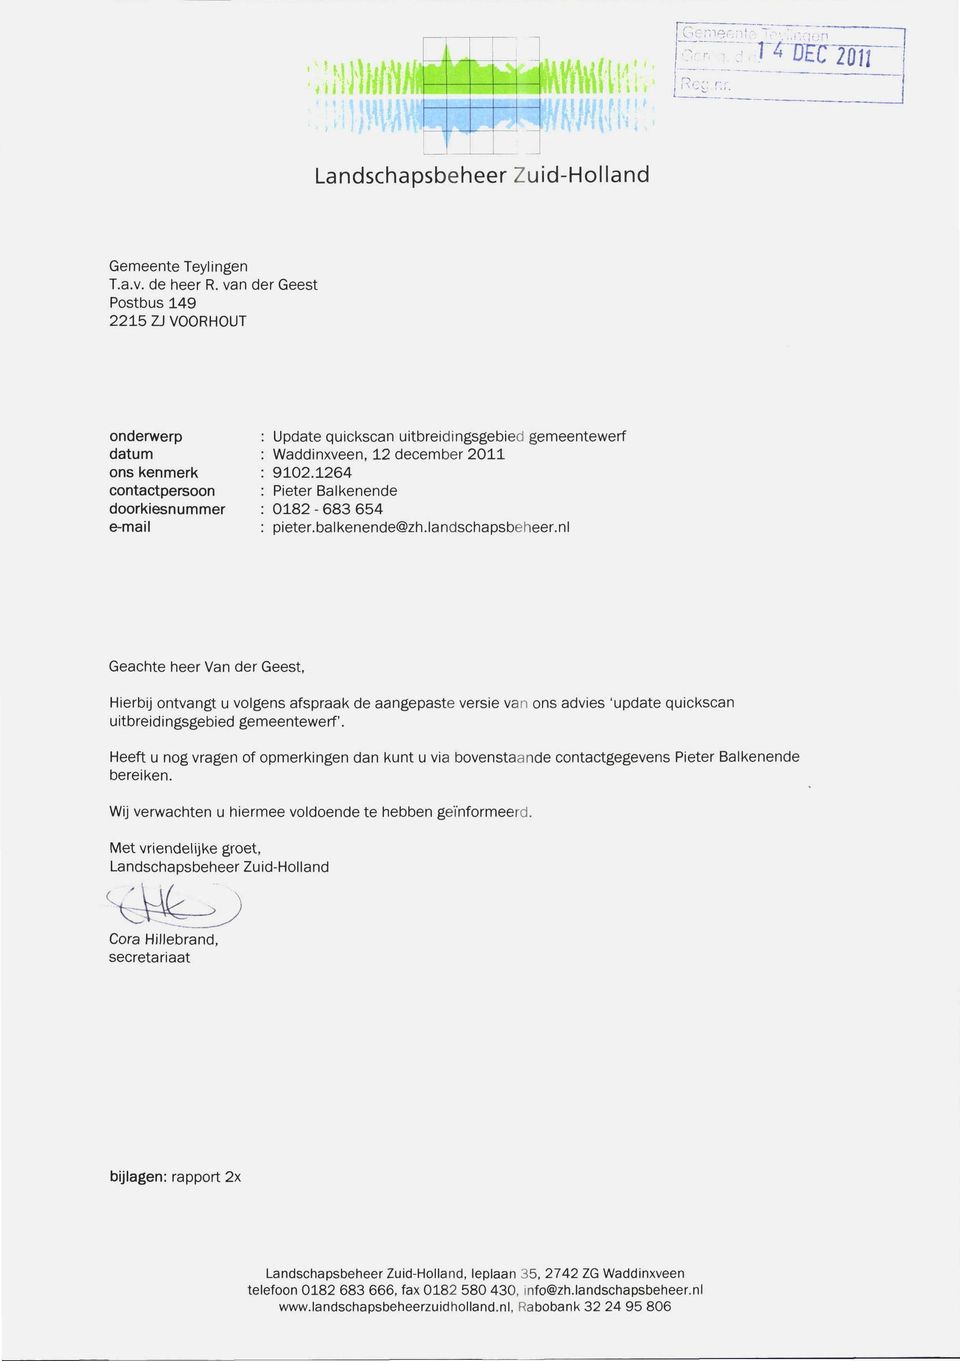 1264 : Pieter Balkenende : 0182-683 654 : pieter.balkenende@zh.landschapsbeheer.